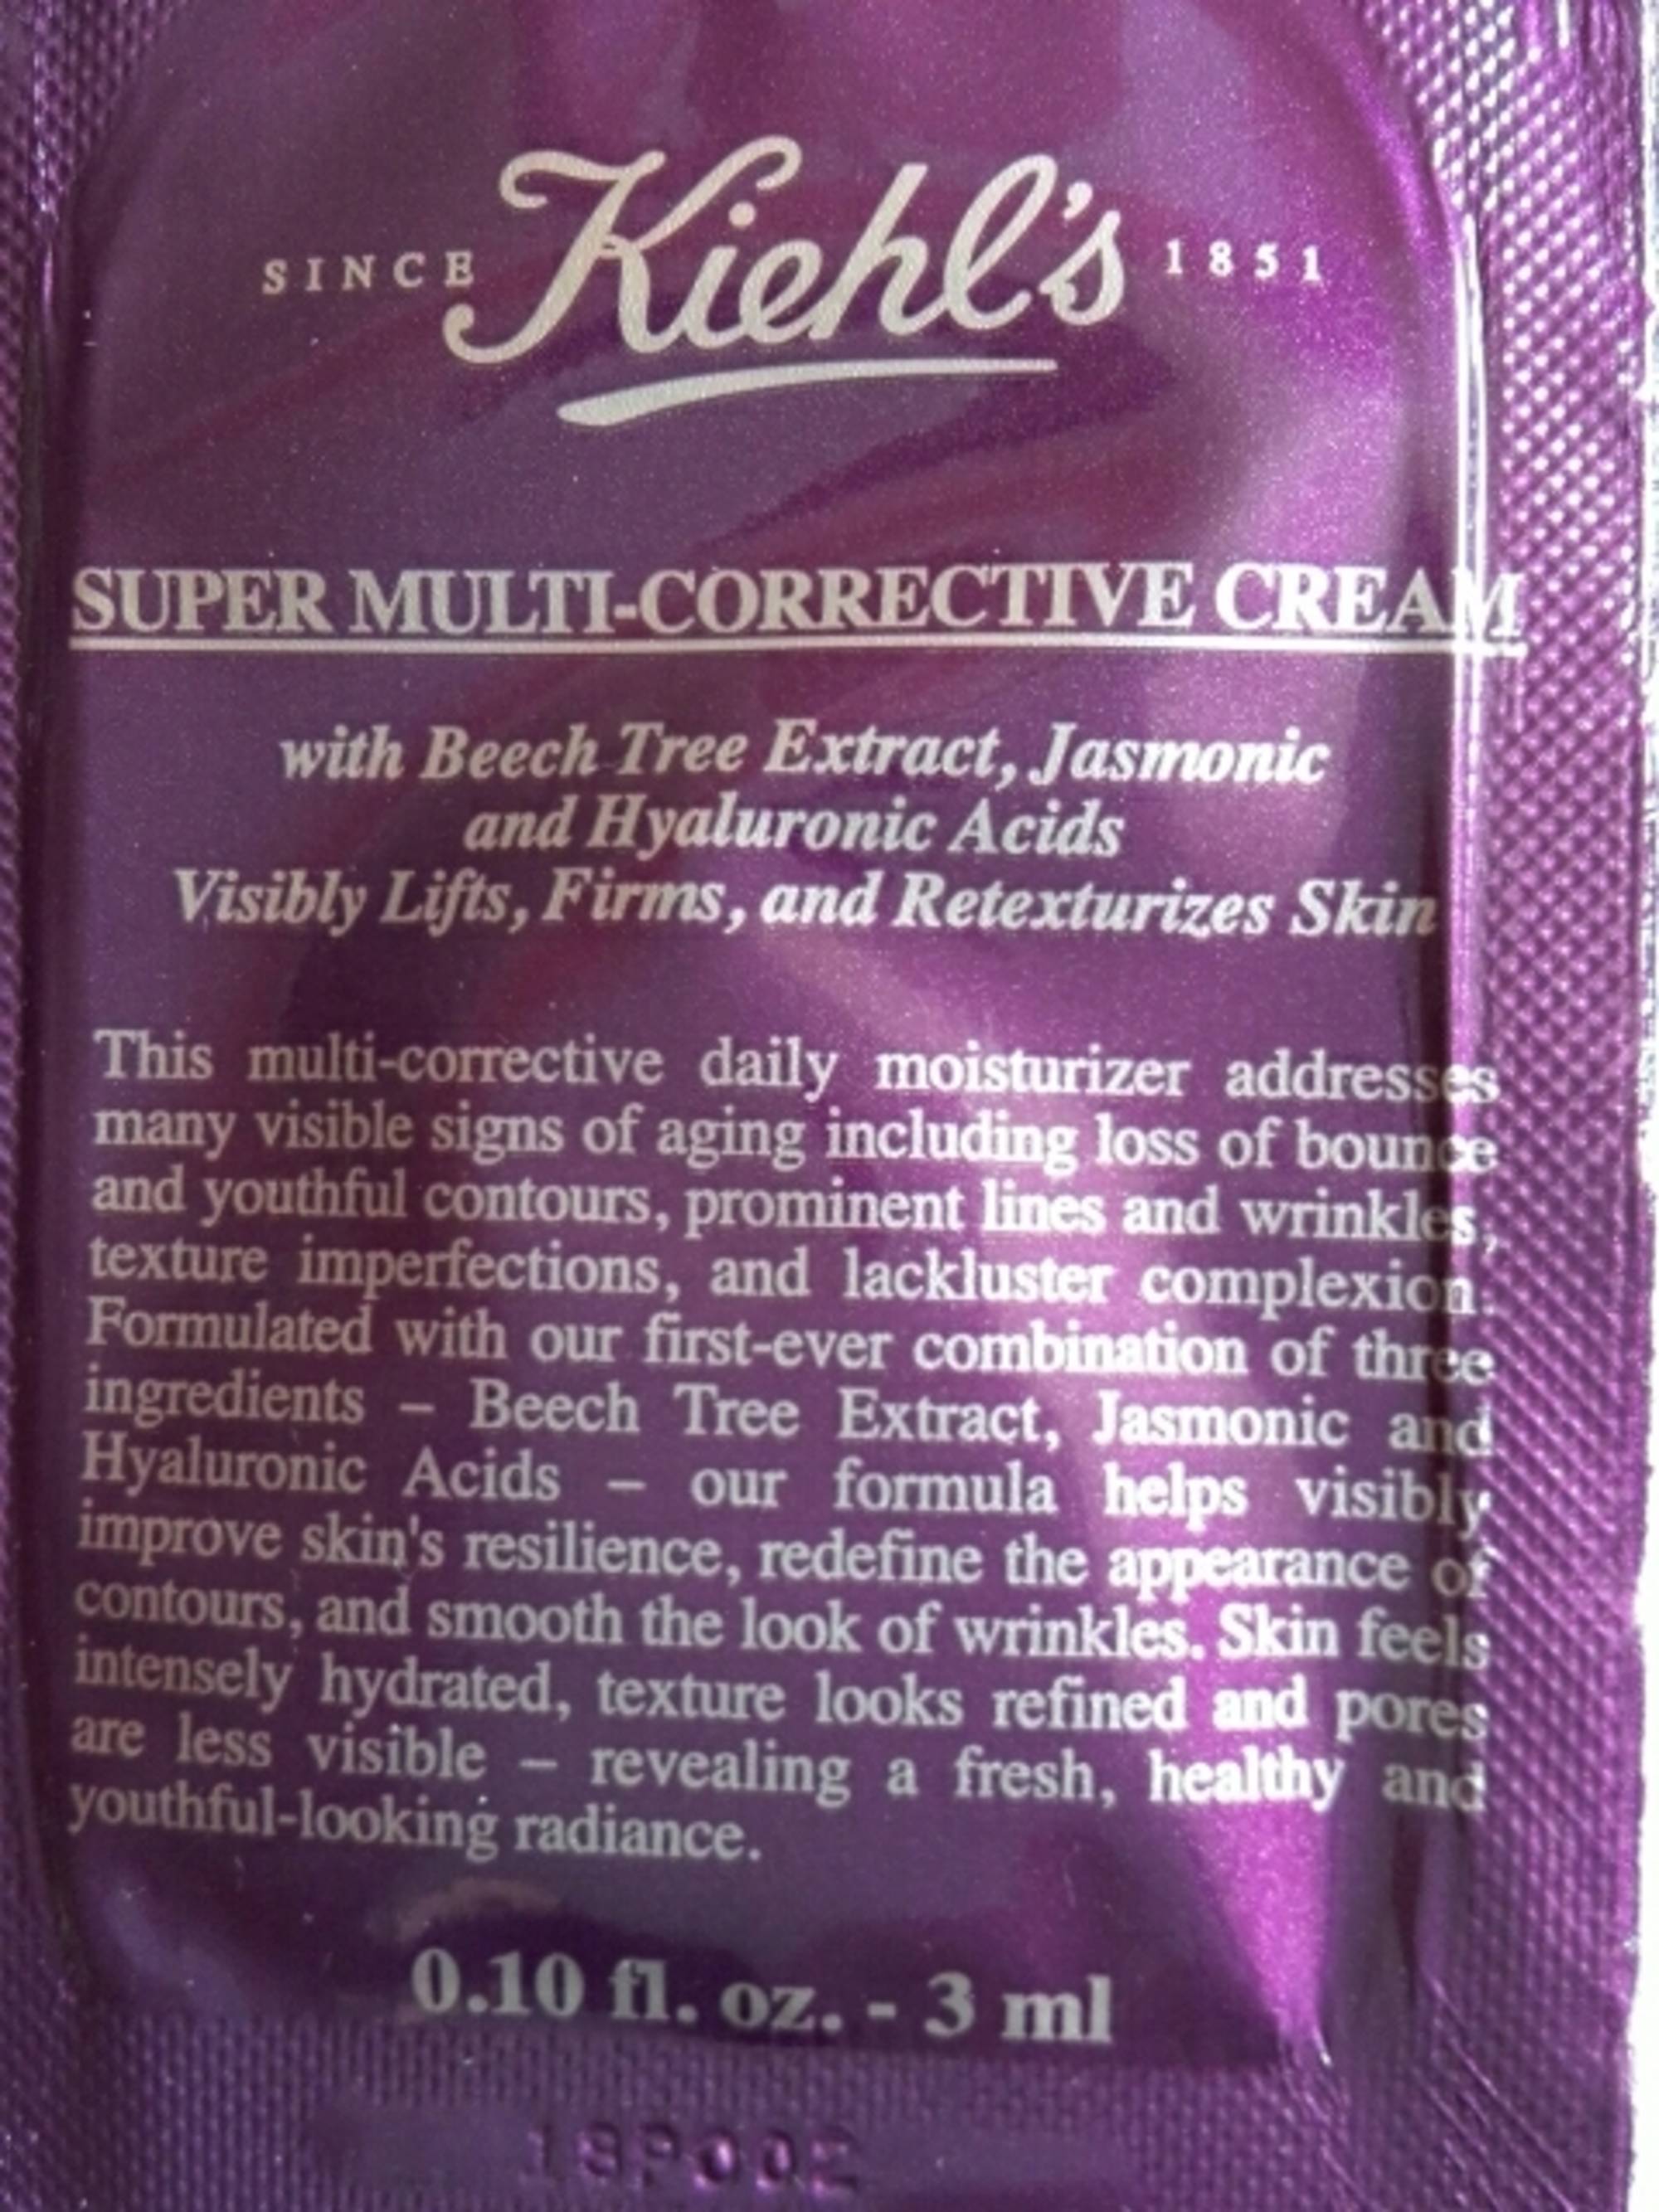 KIEHL'S - Super multi-corrective cream